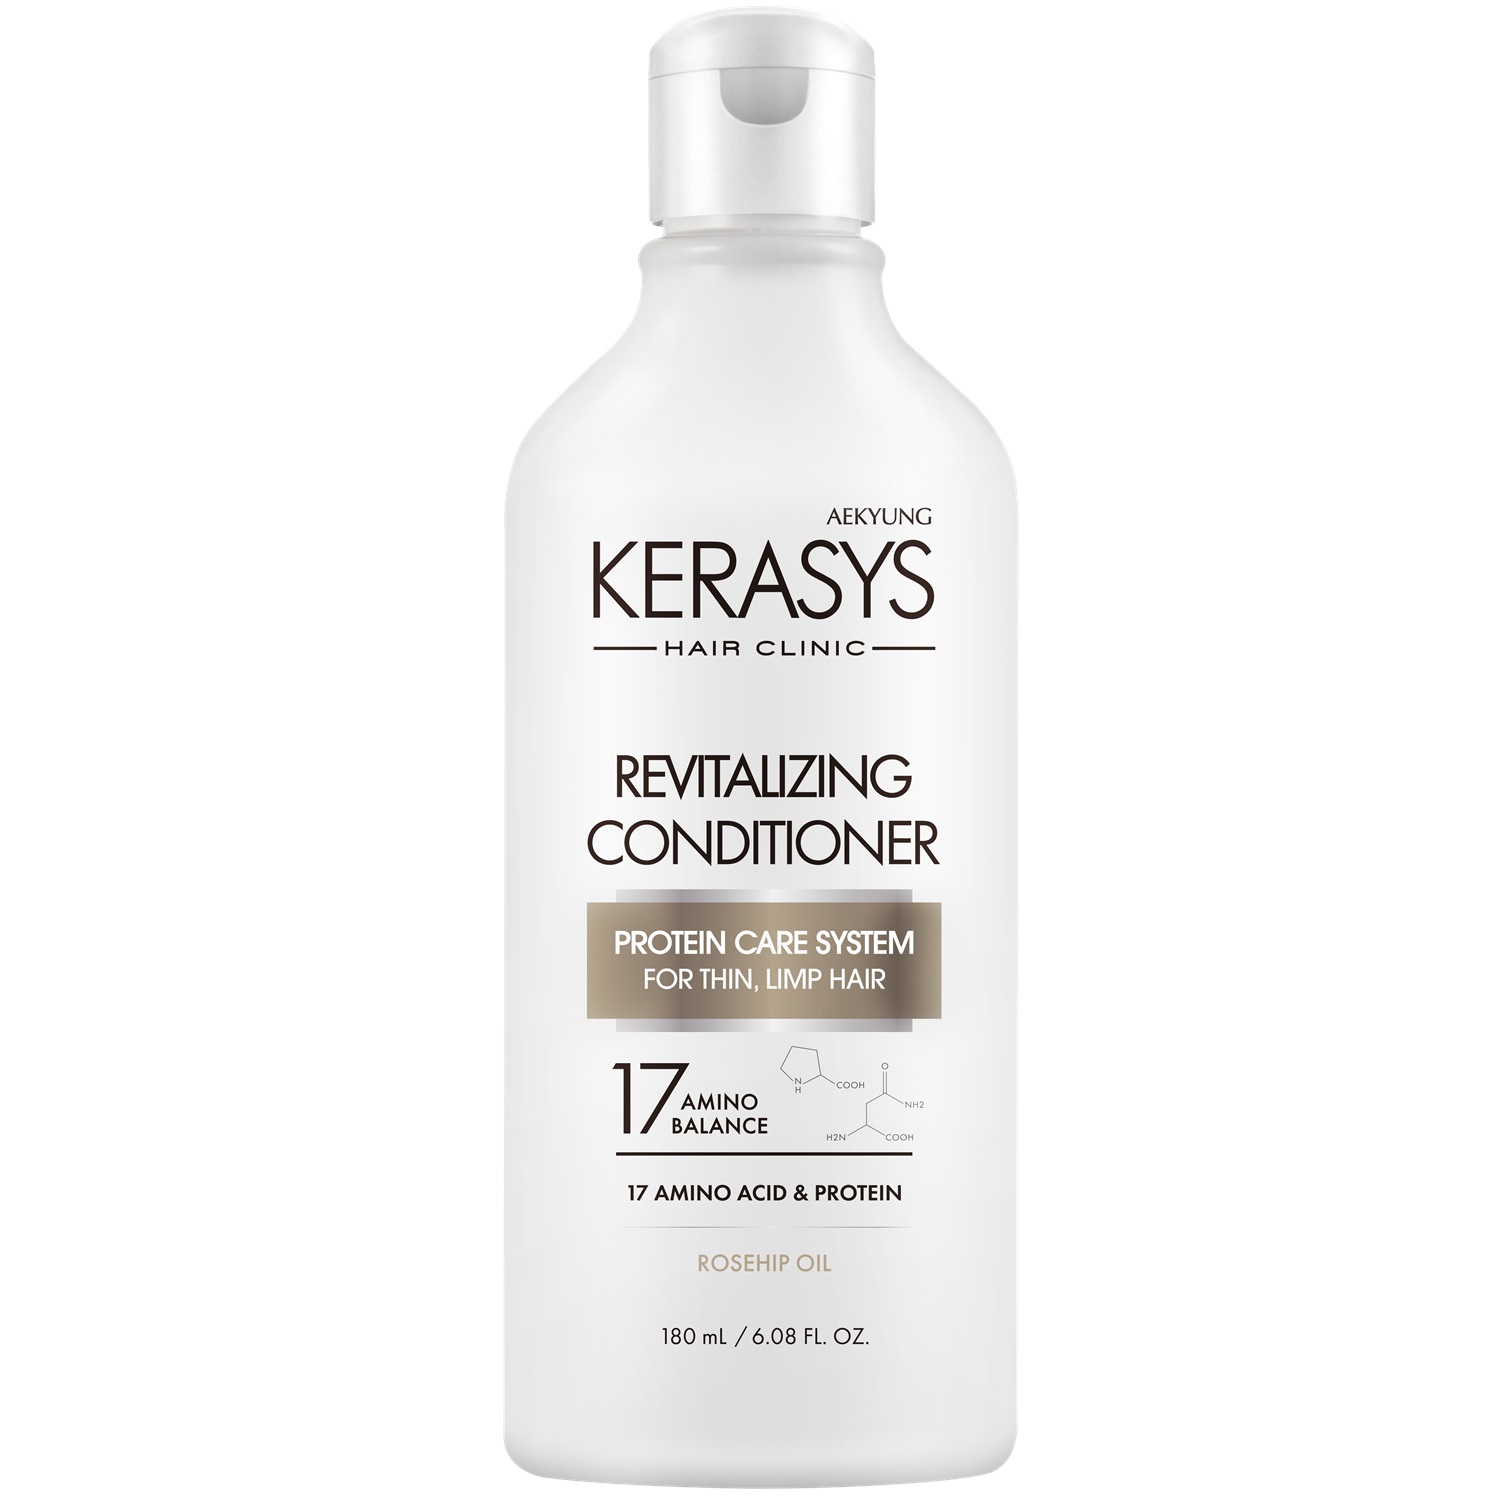 Kerasys Кондиционер оздоравливающий для волос Revitalizing, 180 мл (Kerasys, Hair Clinic) kerasys hair clinic revitalizing кондиционер оздоравливающий для волос 400 мл